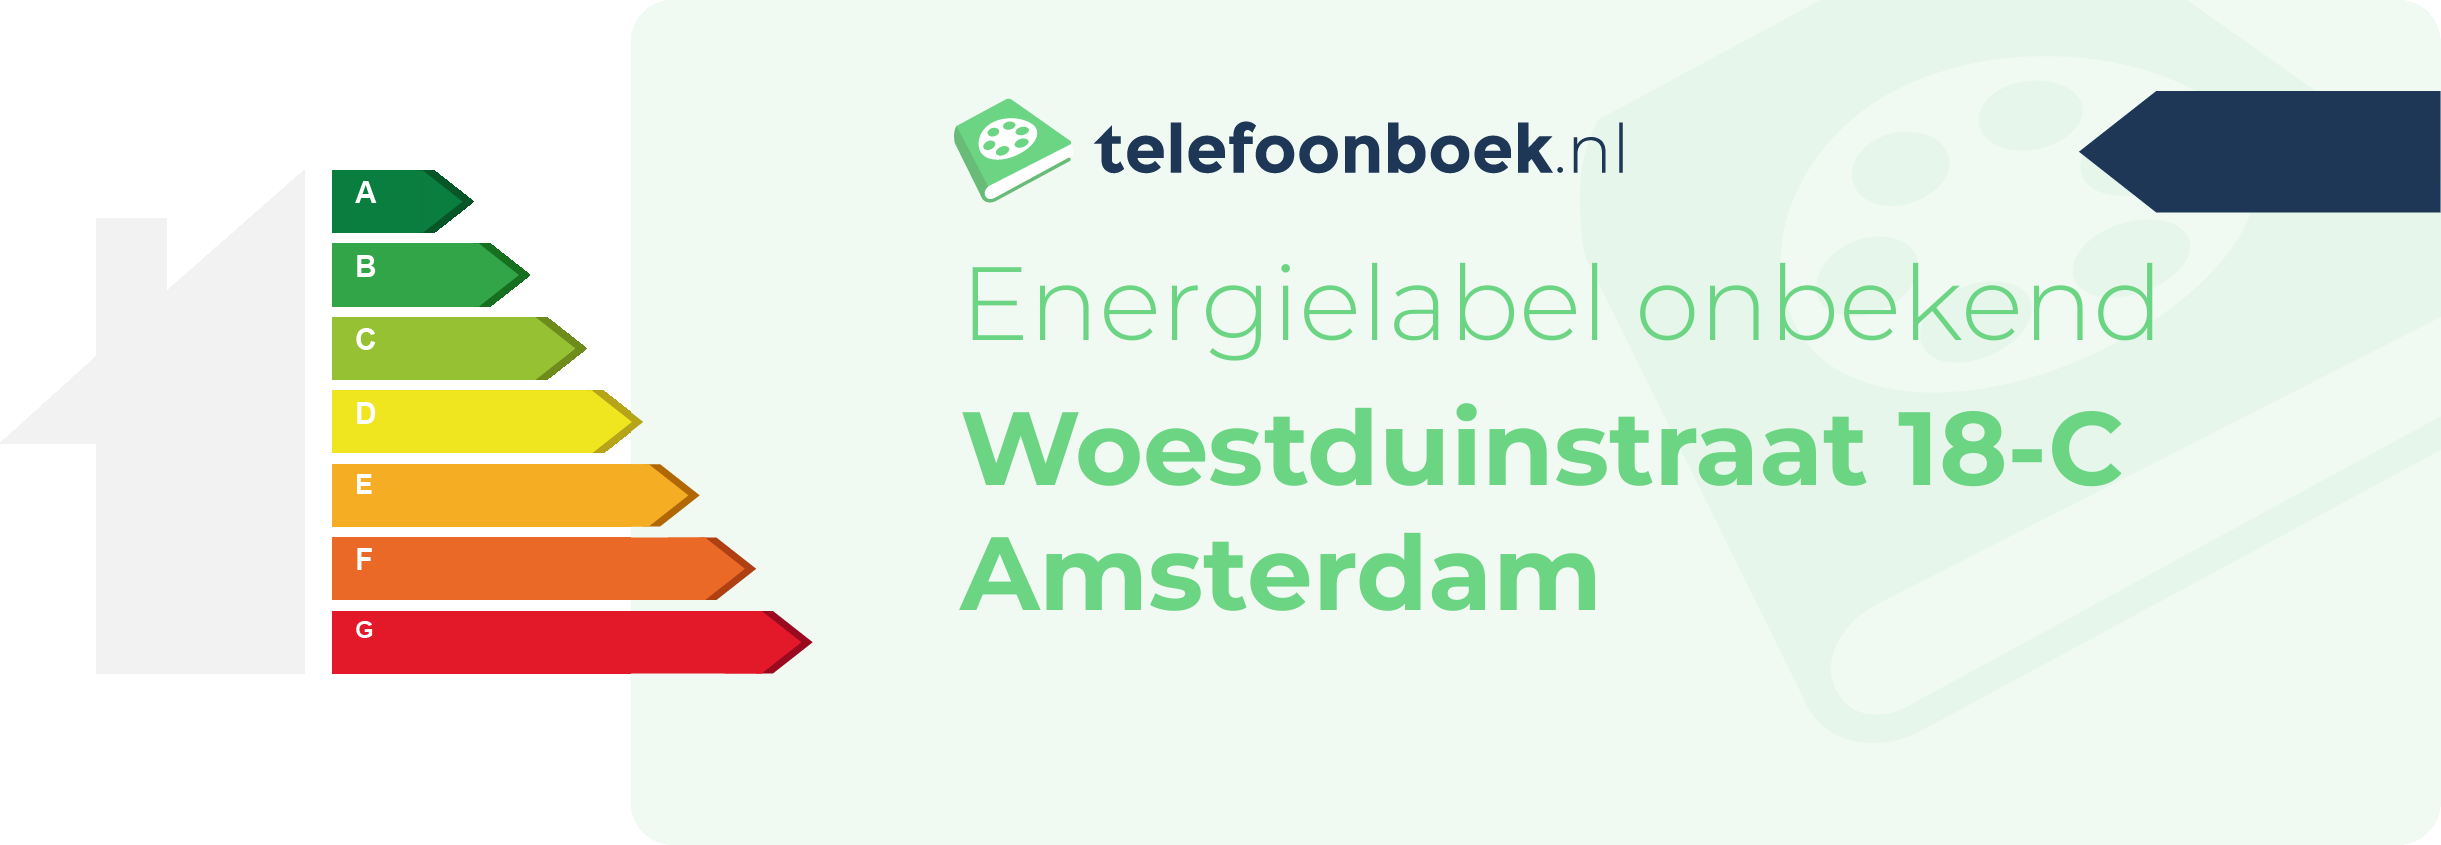 Energielabel Woestduinstraat 18-C Amsterdam